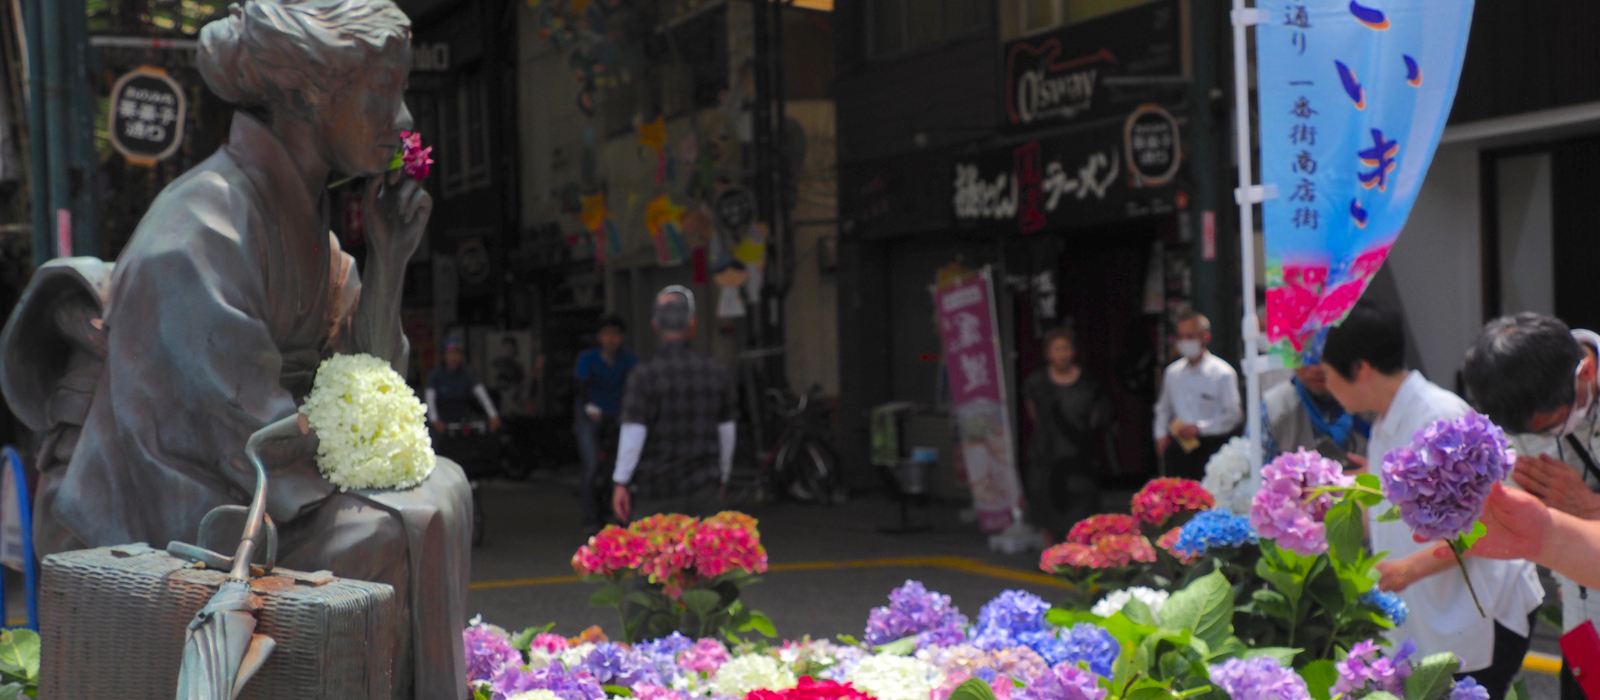 尾道ゆかりの女流作家、 林芙美子を偲ぶ「あじさいき」。今年は６月２３日に開催されます。林芙美子像前でのあじさいの献花をはじめ、様々な催しがあります。